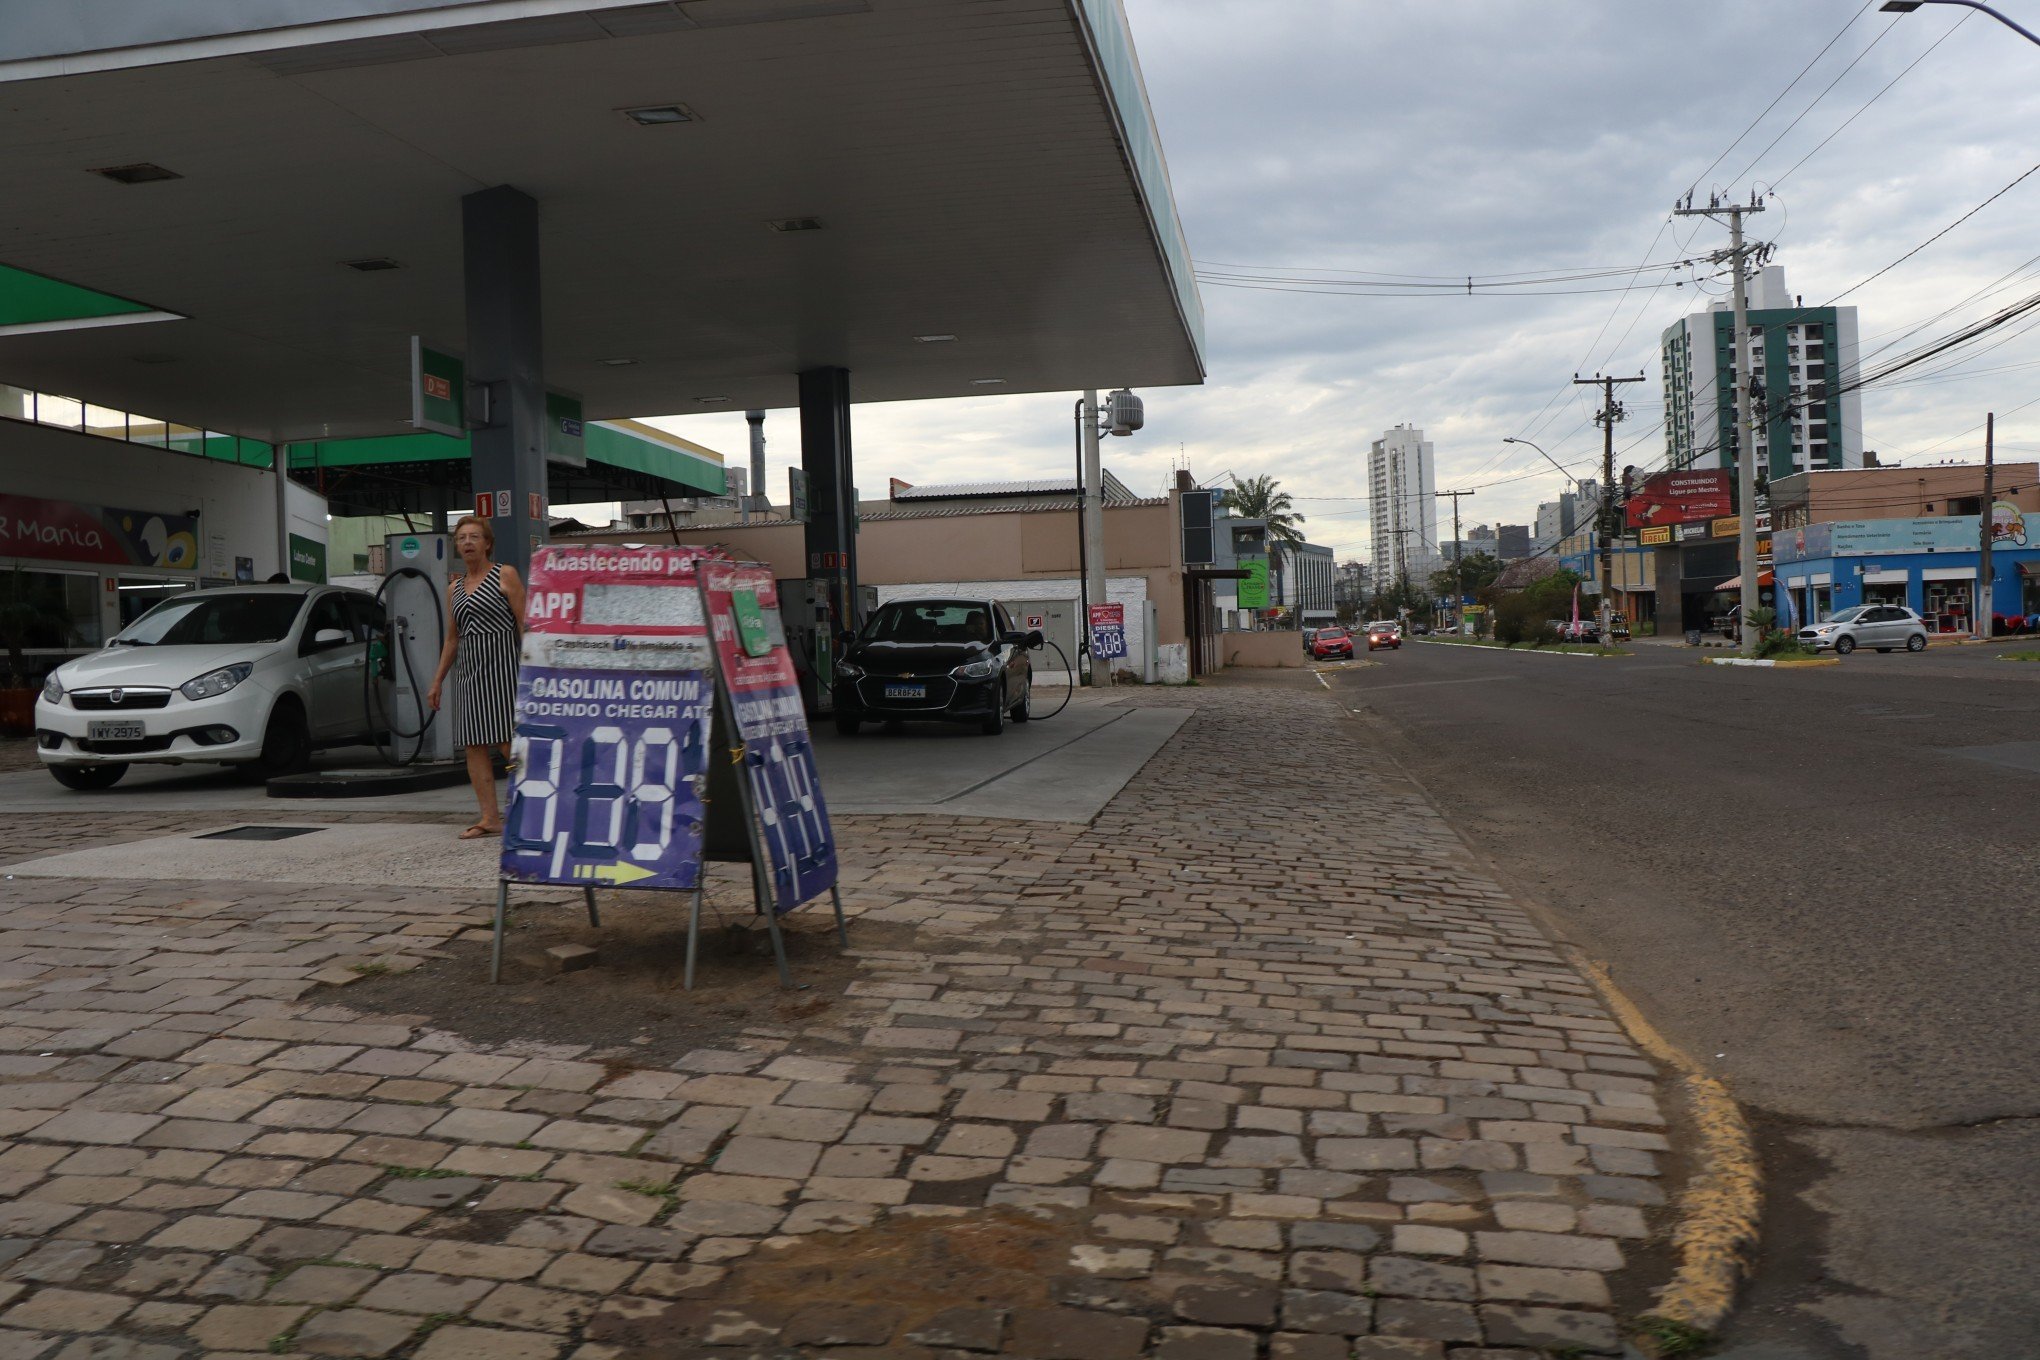 Gasolina abaixo de 5 reais ainda pode ser encontrada em postos de Novo Hamburgo